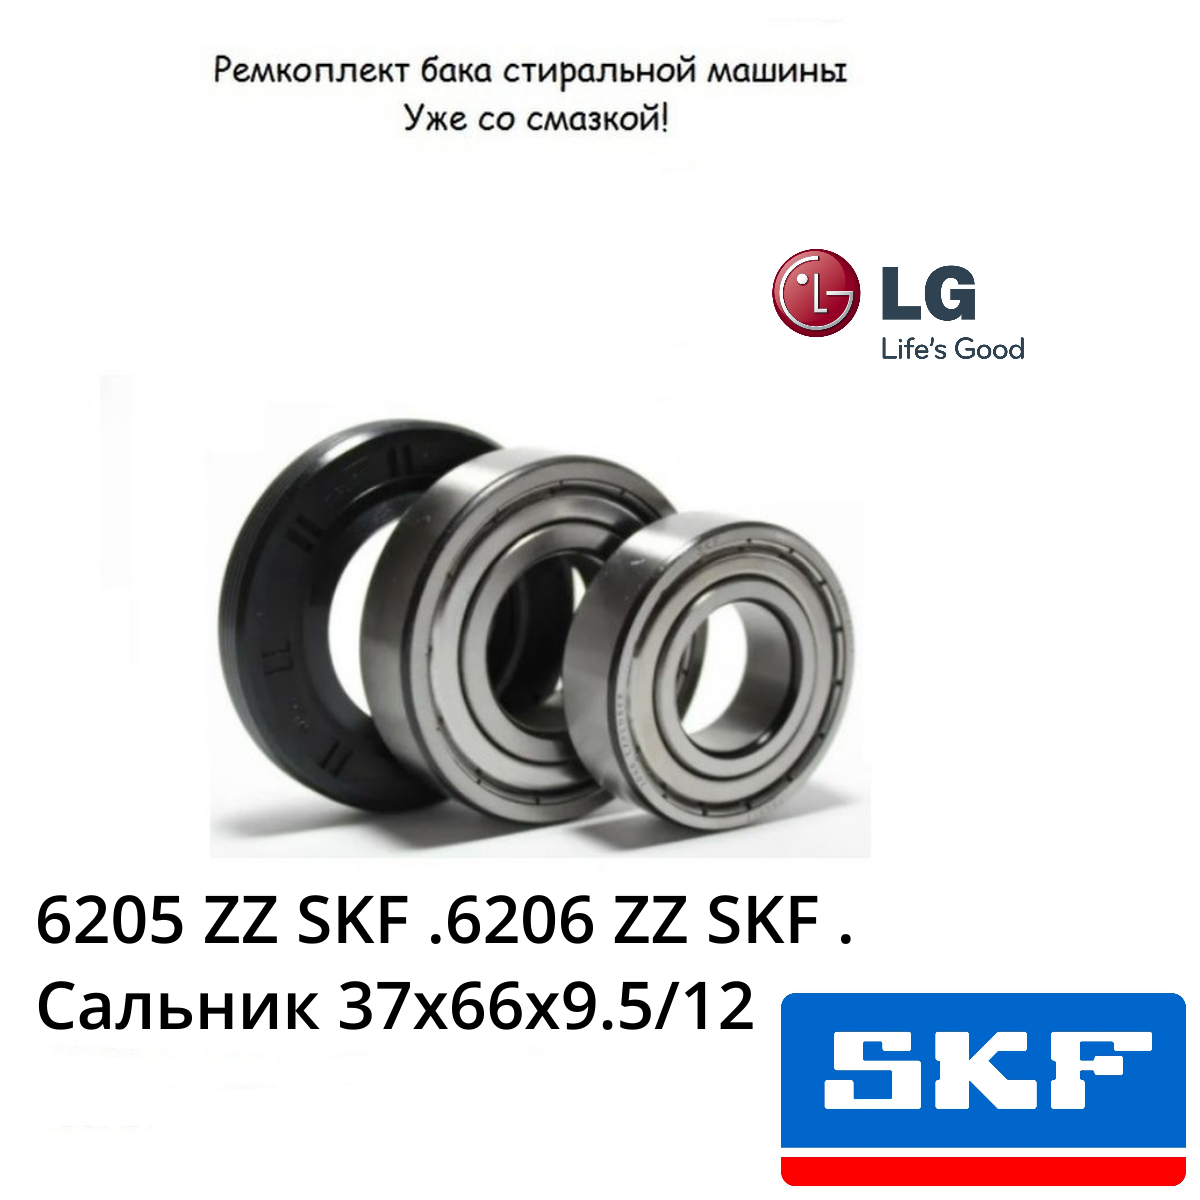 Ремкомплект подшипников бака стиральной машины LG (прямой привод загрузка до 7 кг.)6205 ZZ  6206 ZZ  Сальник 37x66x9.5/12